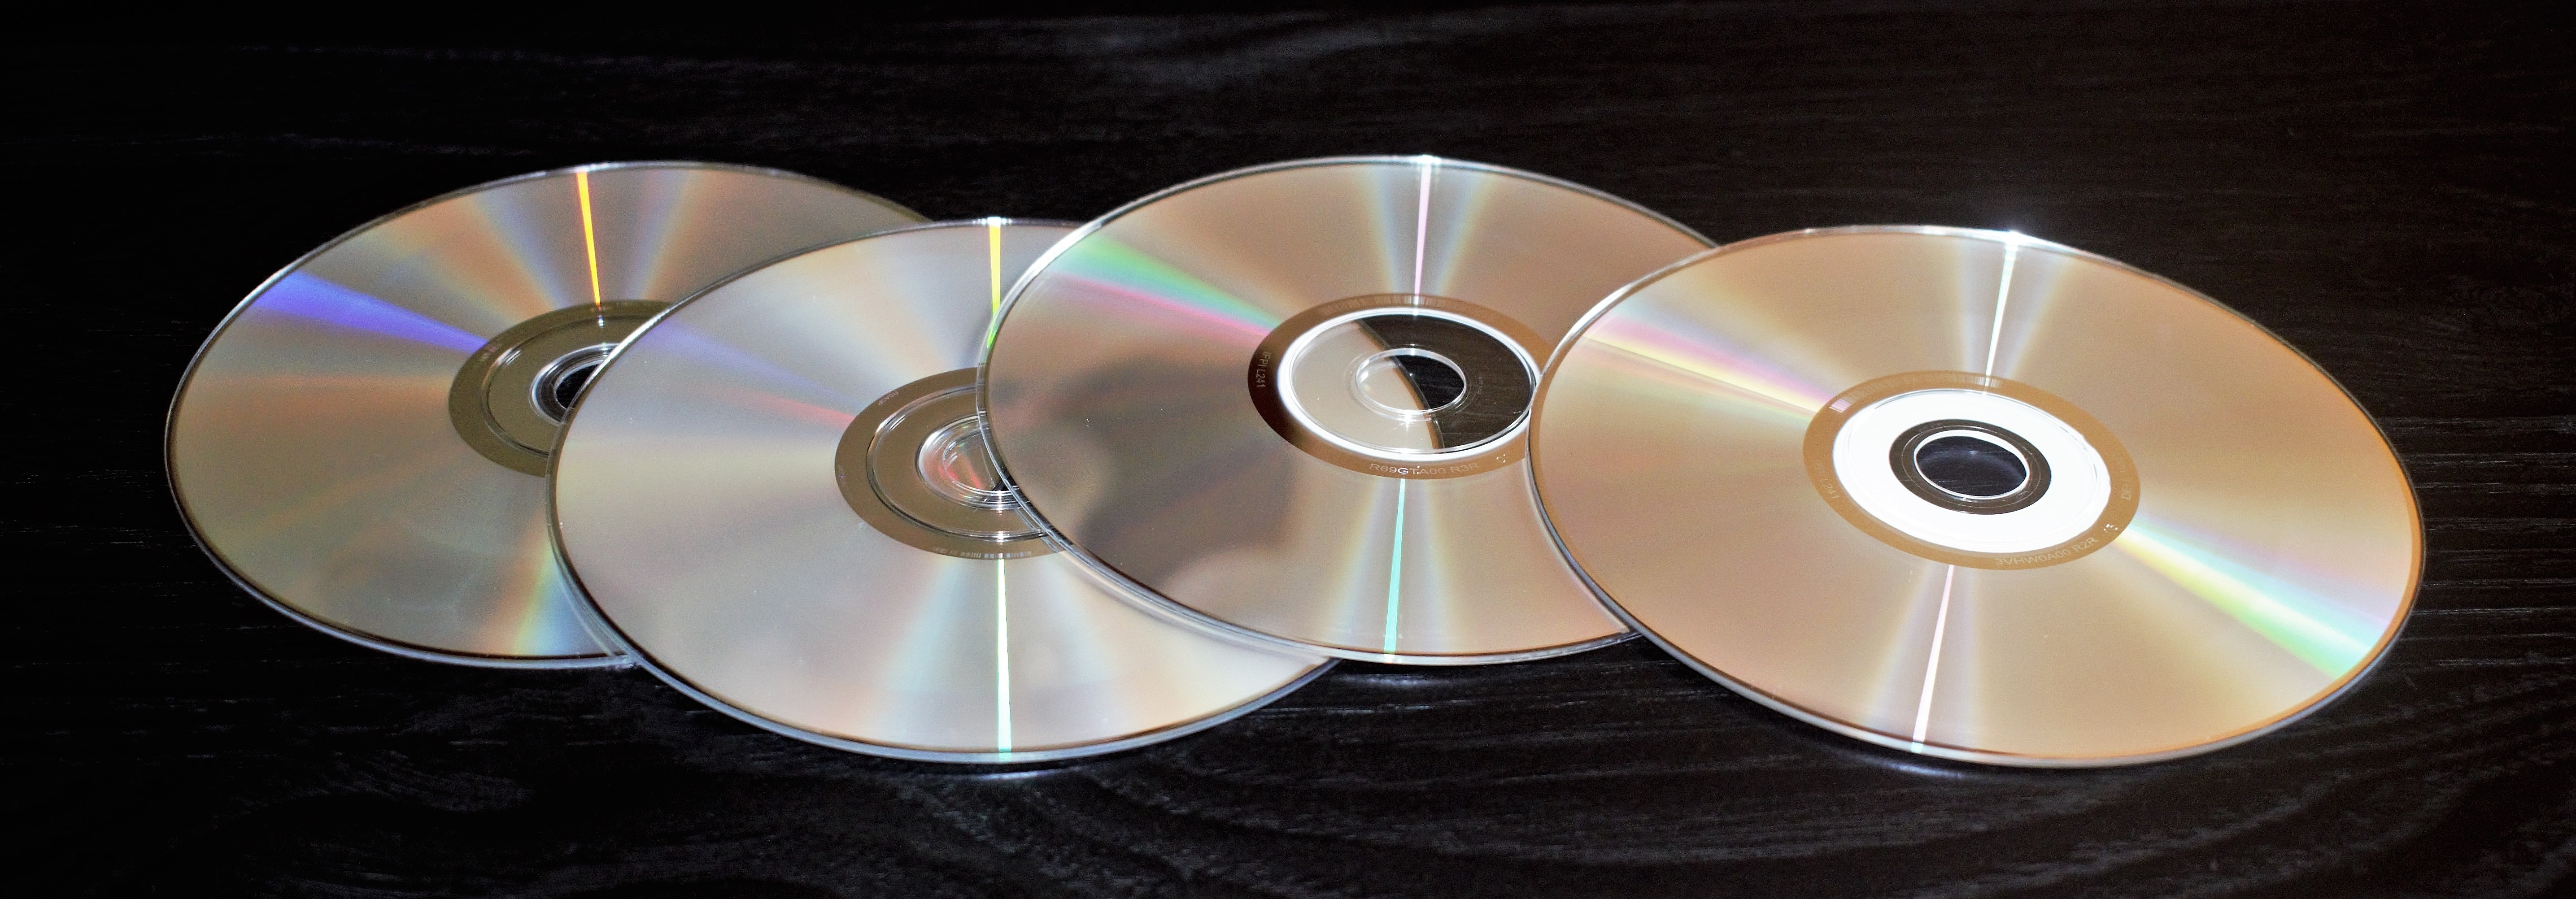 4 blank cds